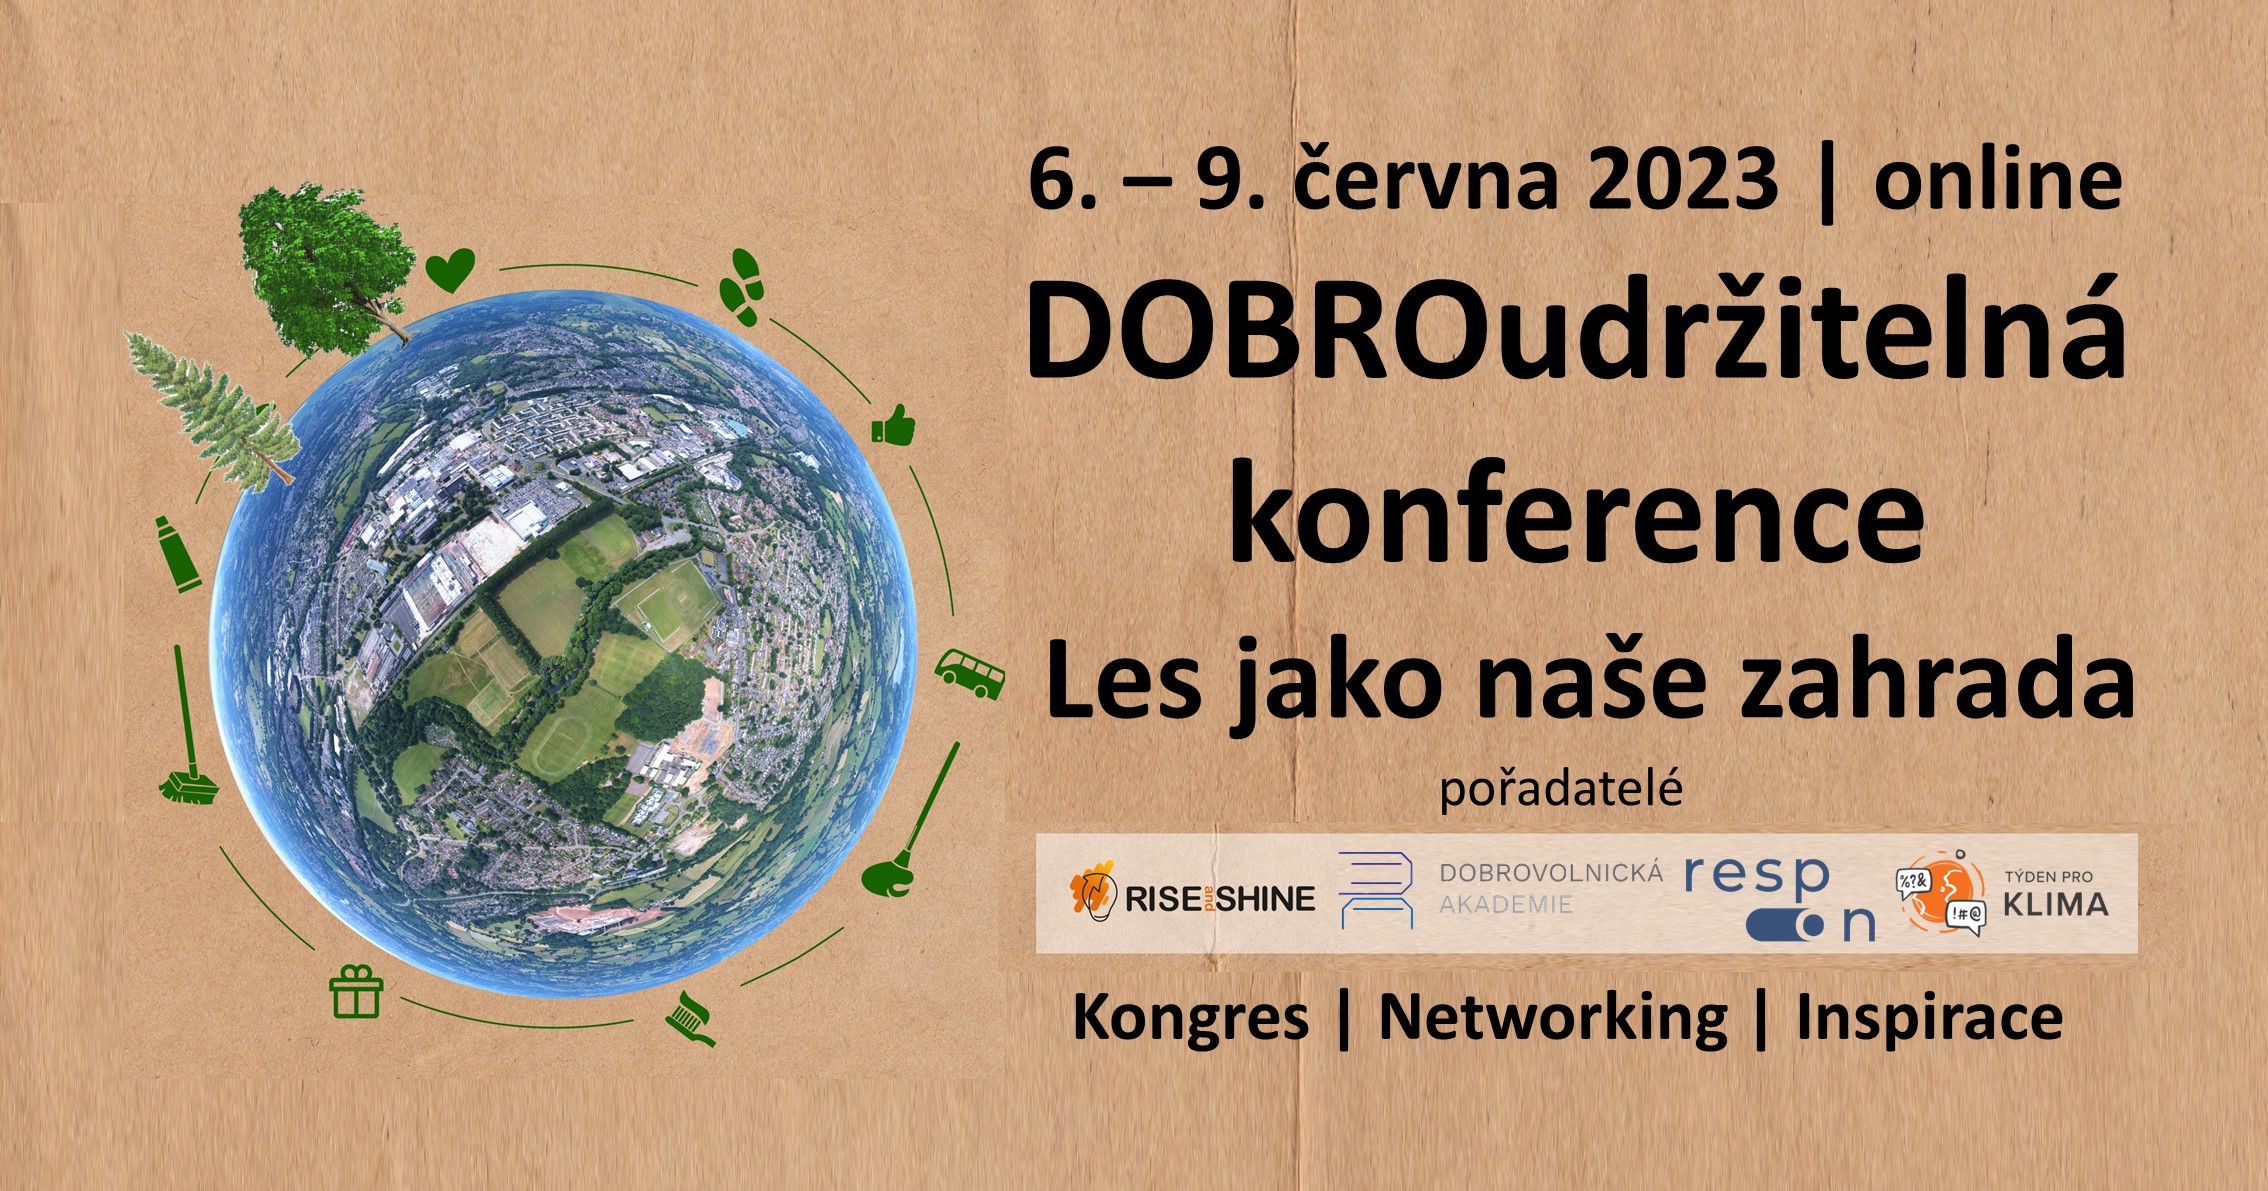 💙 Les jako naše zahrada | DOBROudržitelná konference |NETWORKING ONLINE 💙